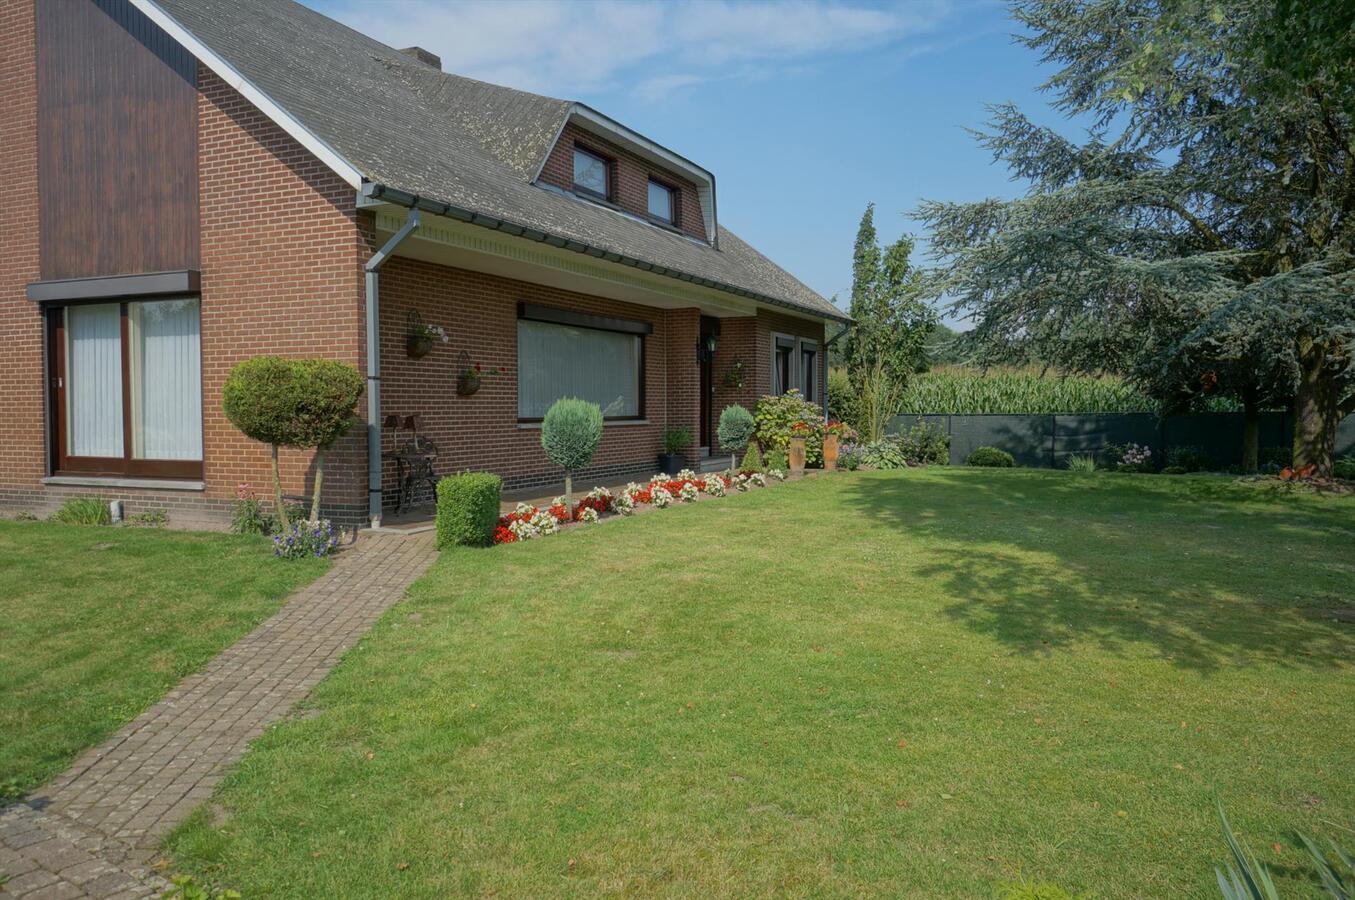 Property sold in Neerpelt